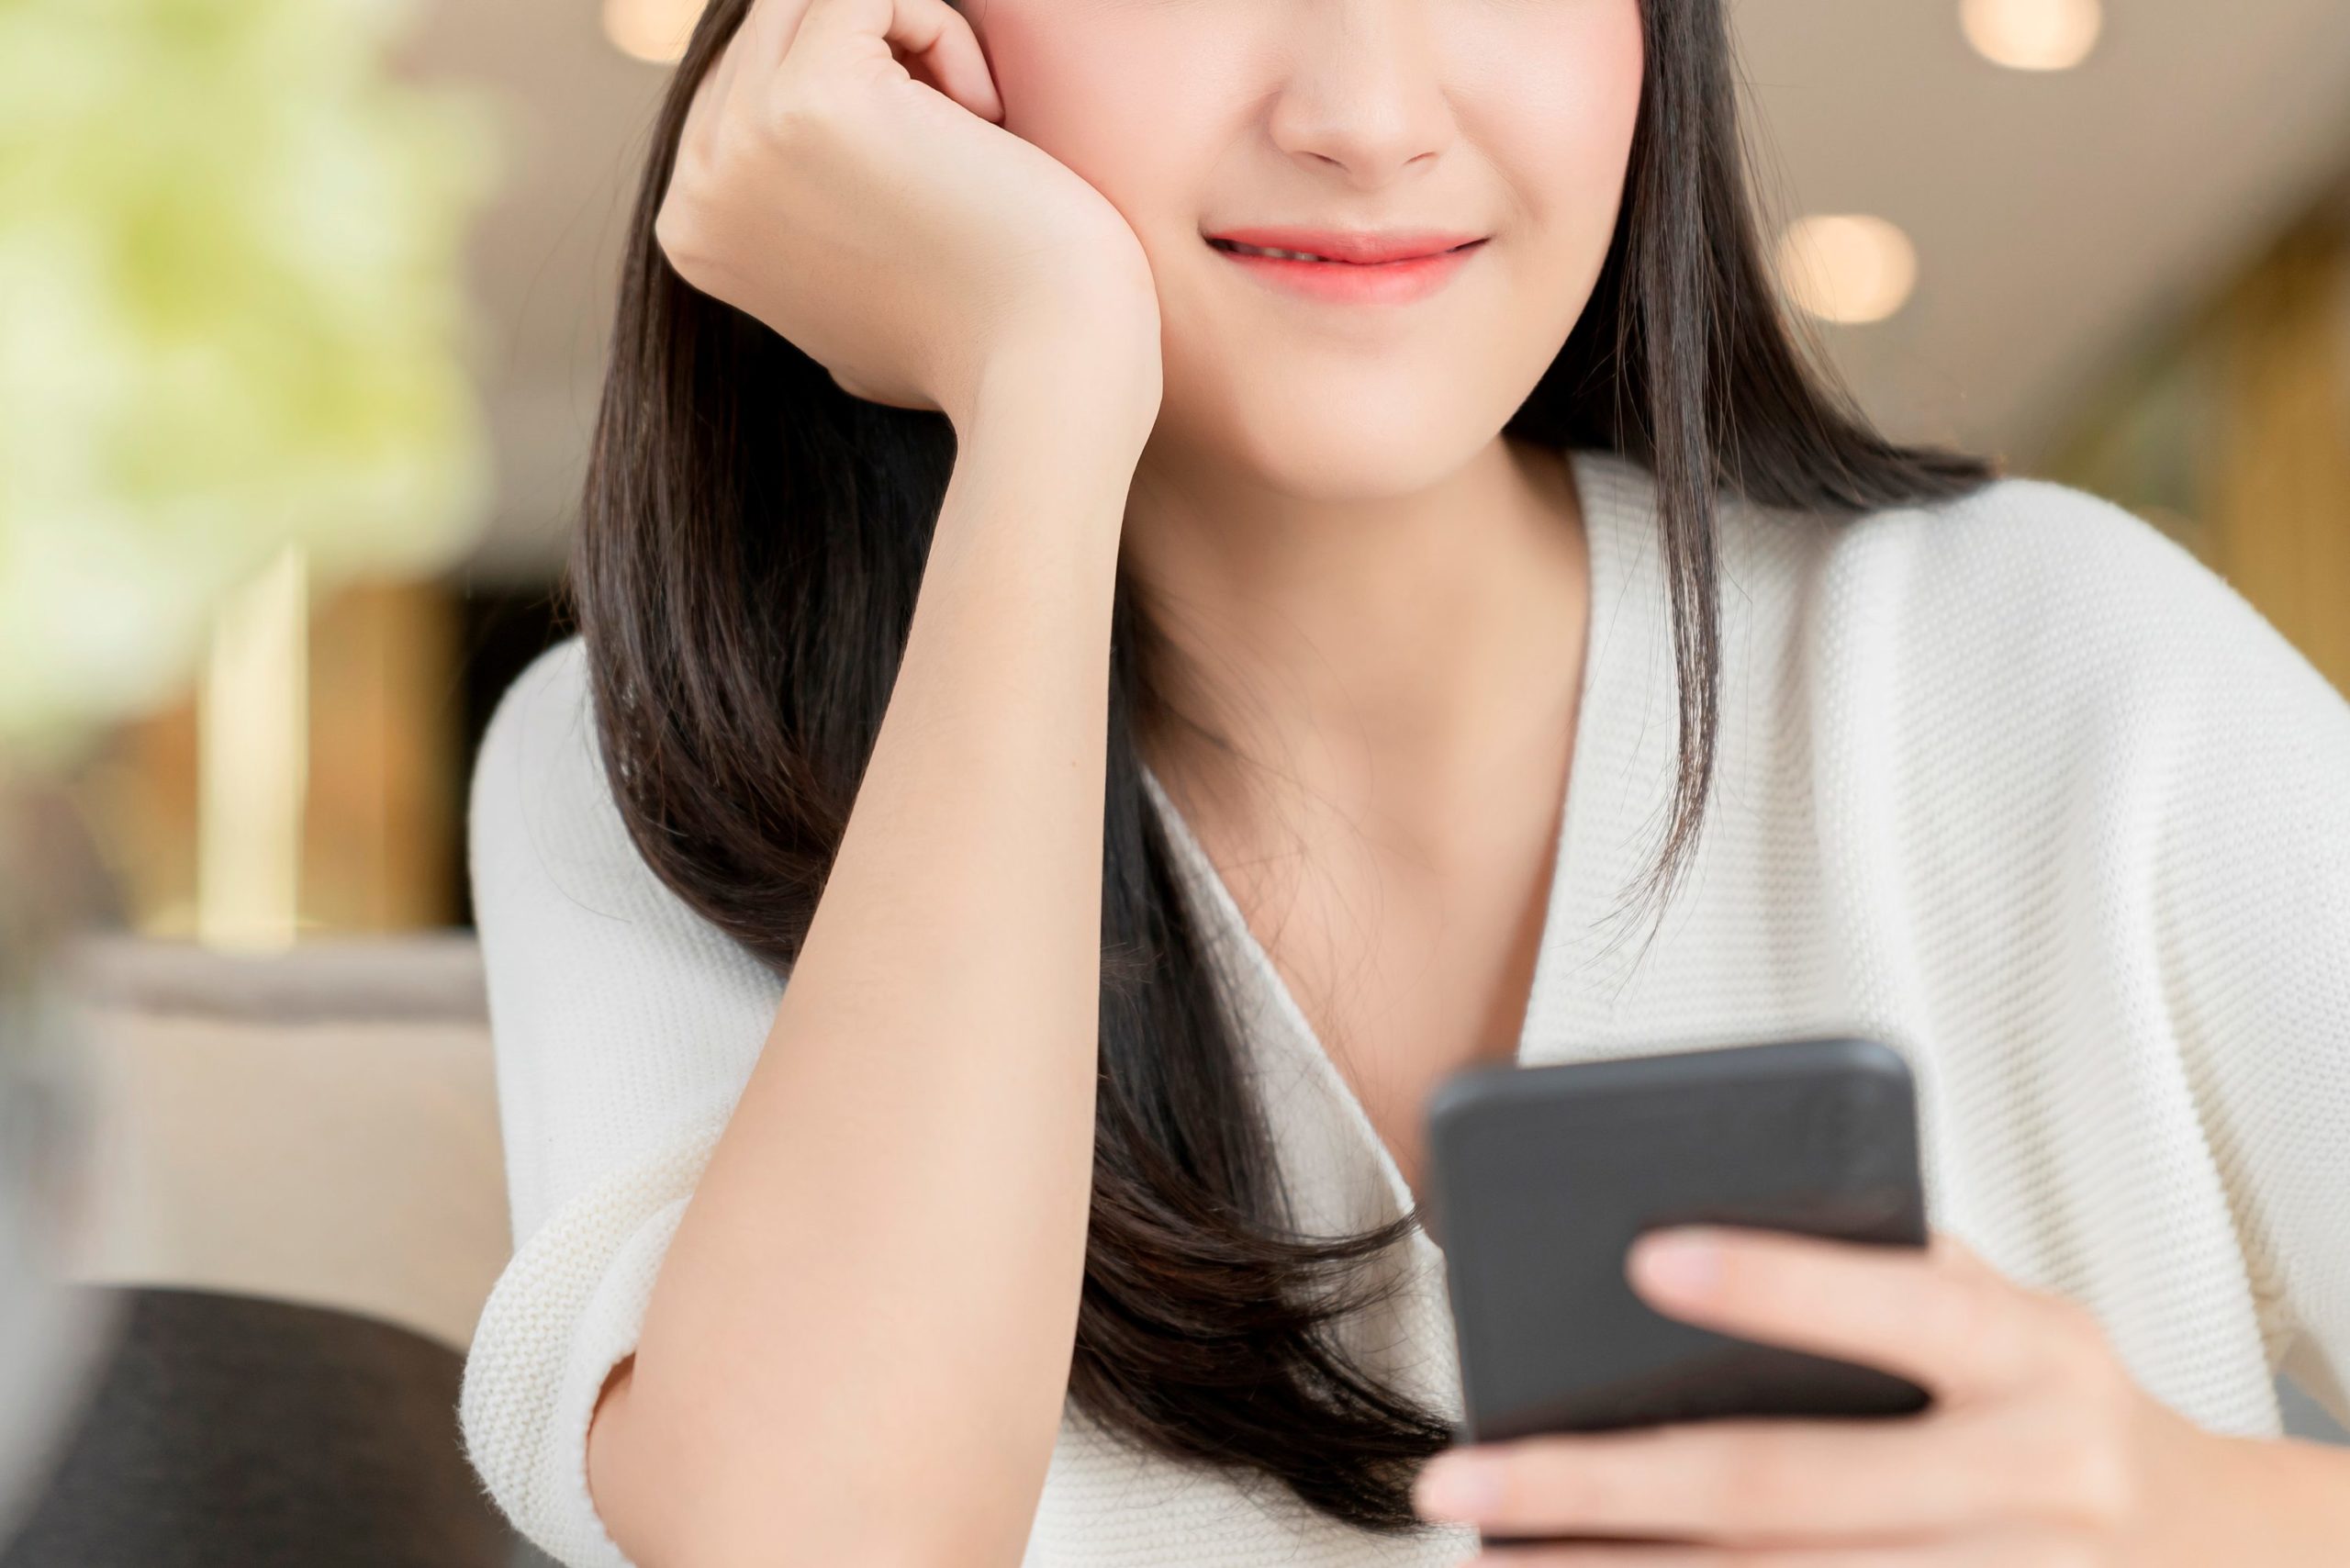 スマホを見る女性 beautiful asian woman long black hair portrait white sweater